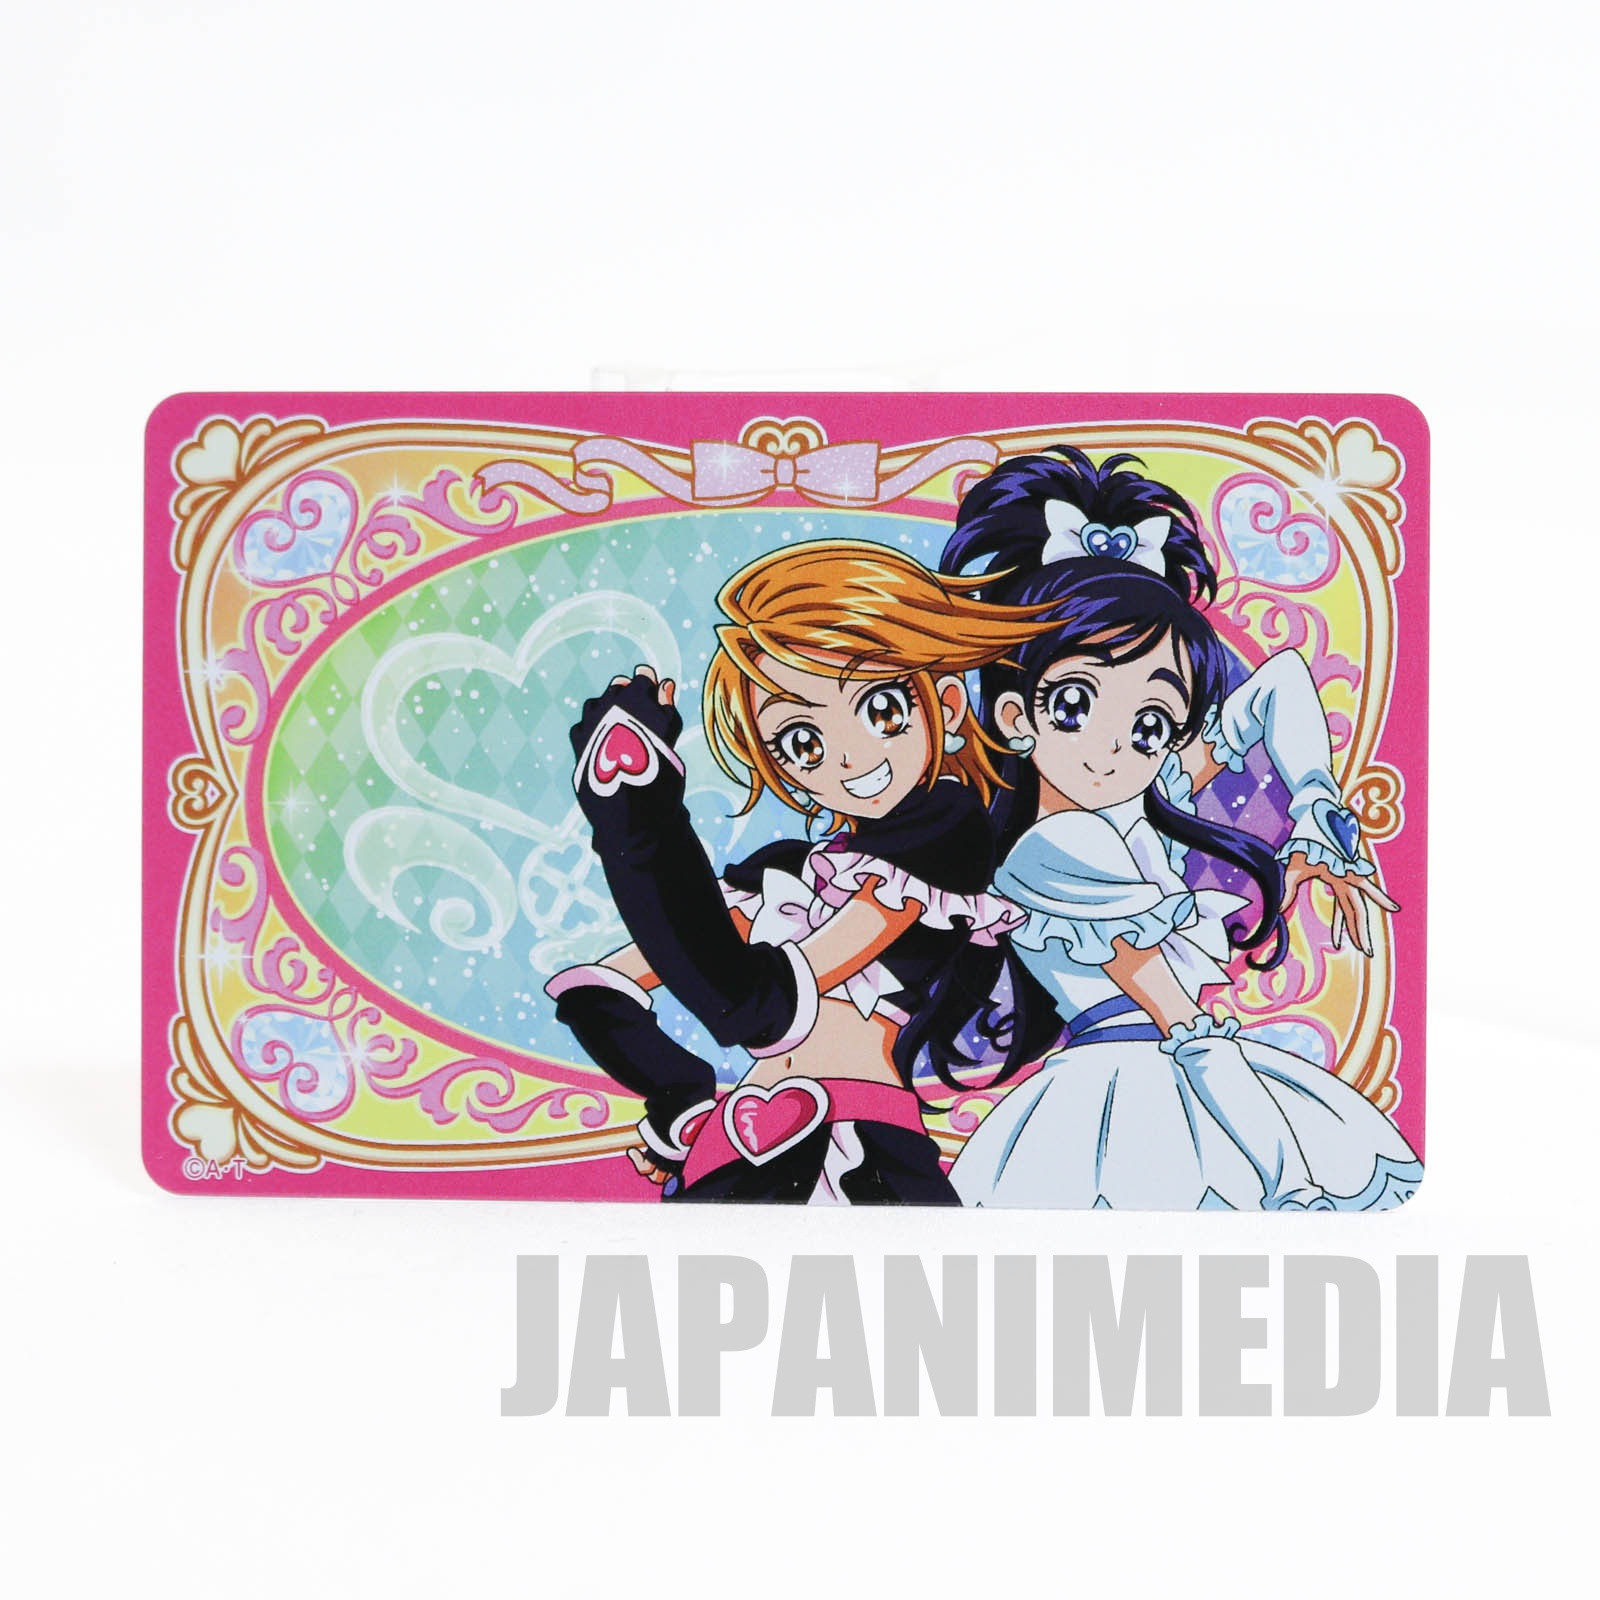 Futari wa Pretty Cure 15th anniversary Medal & Replica Card set